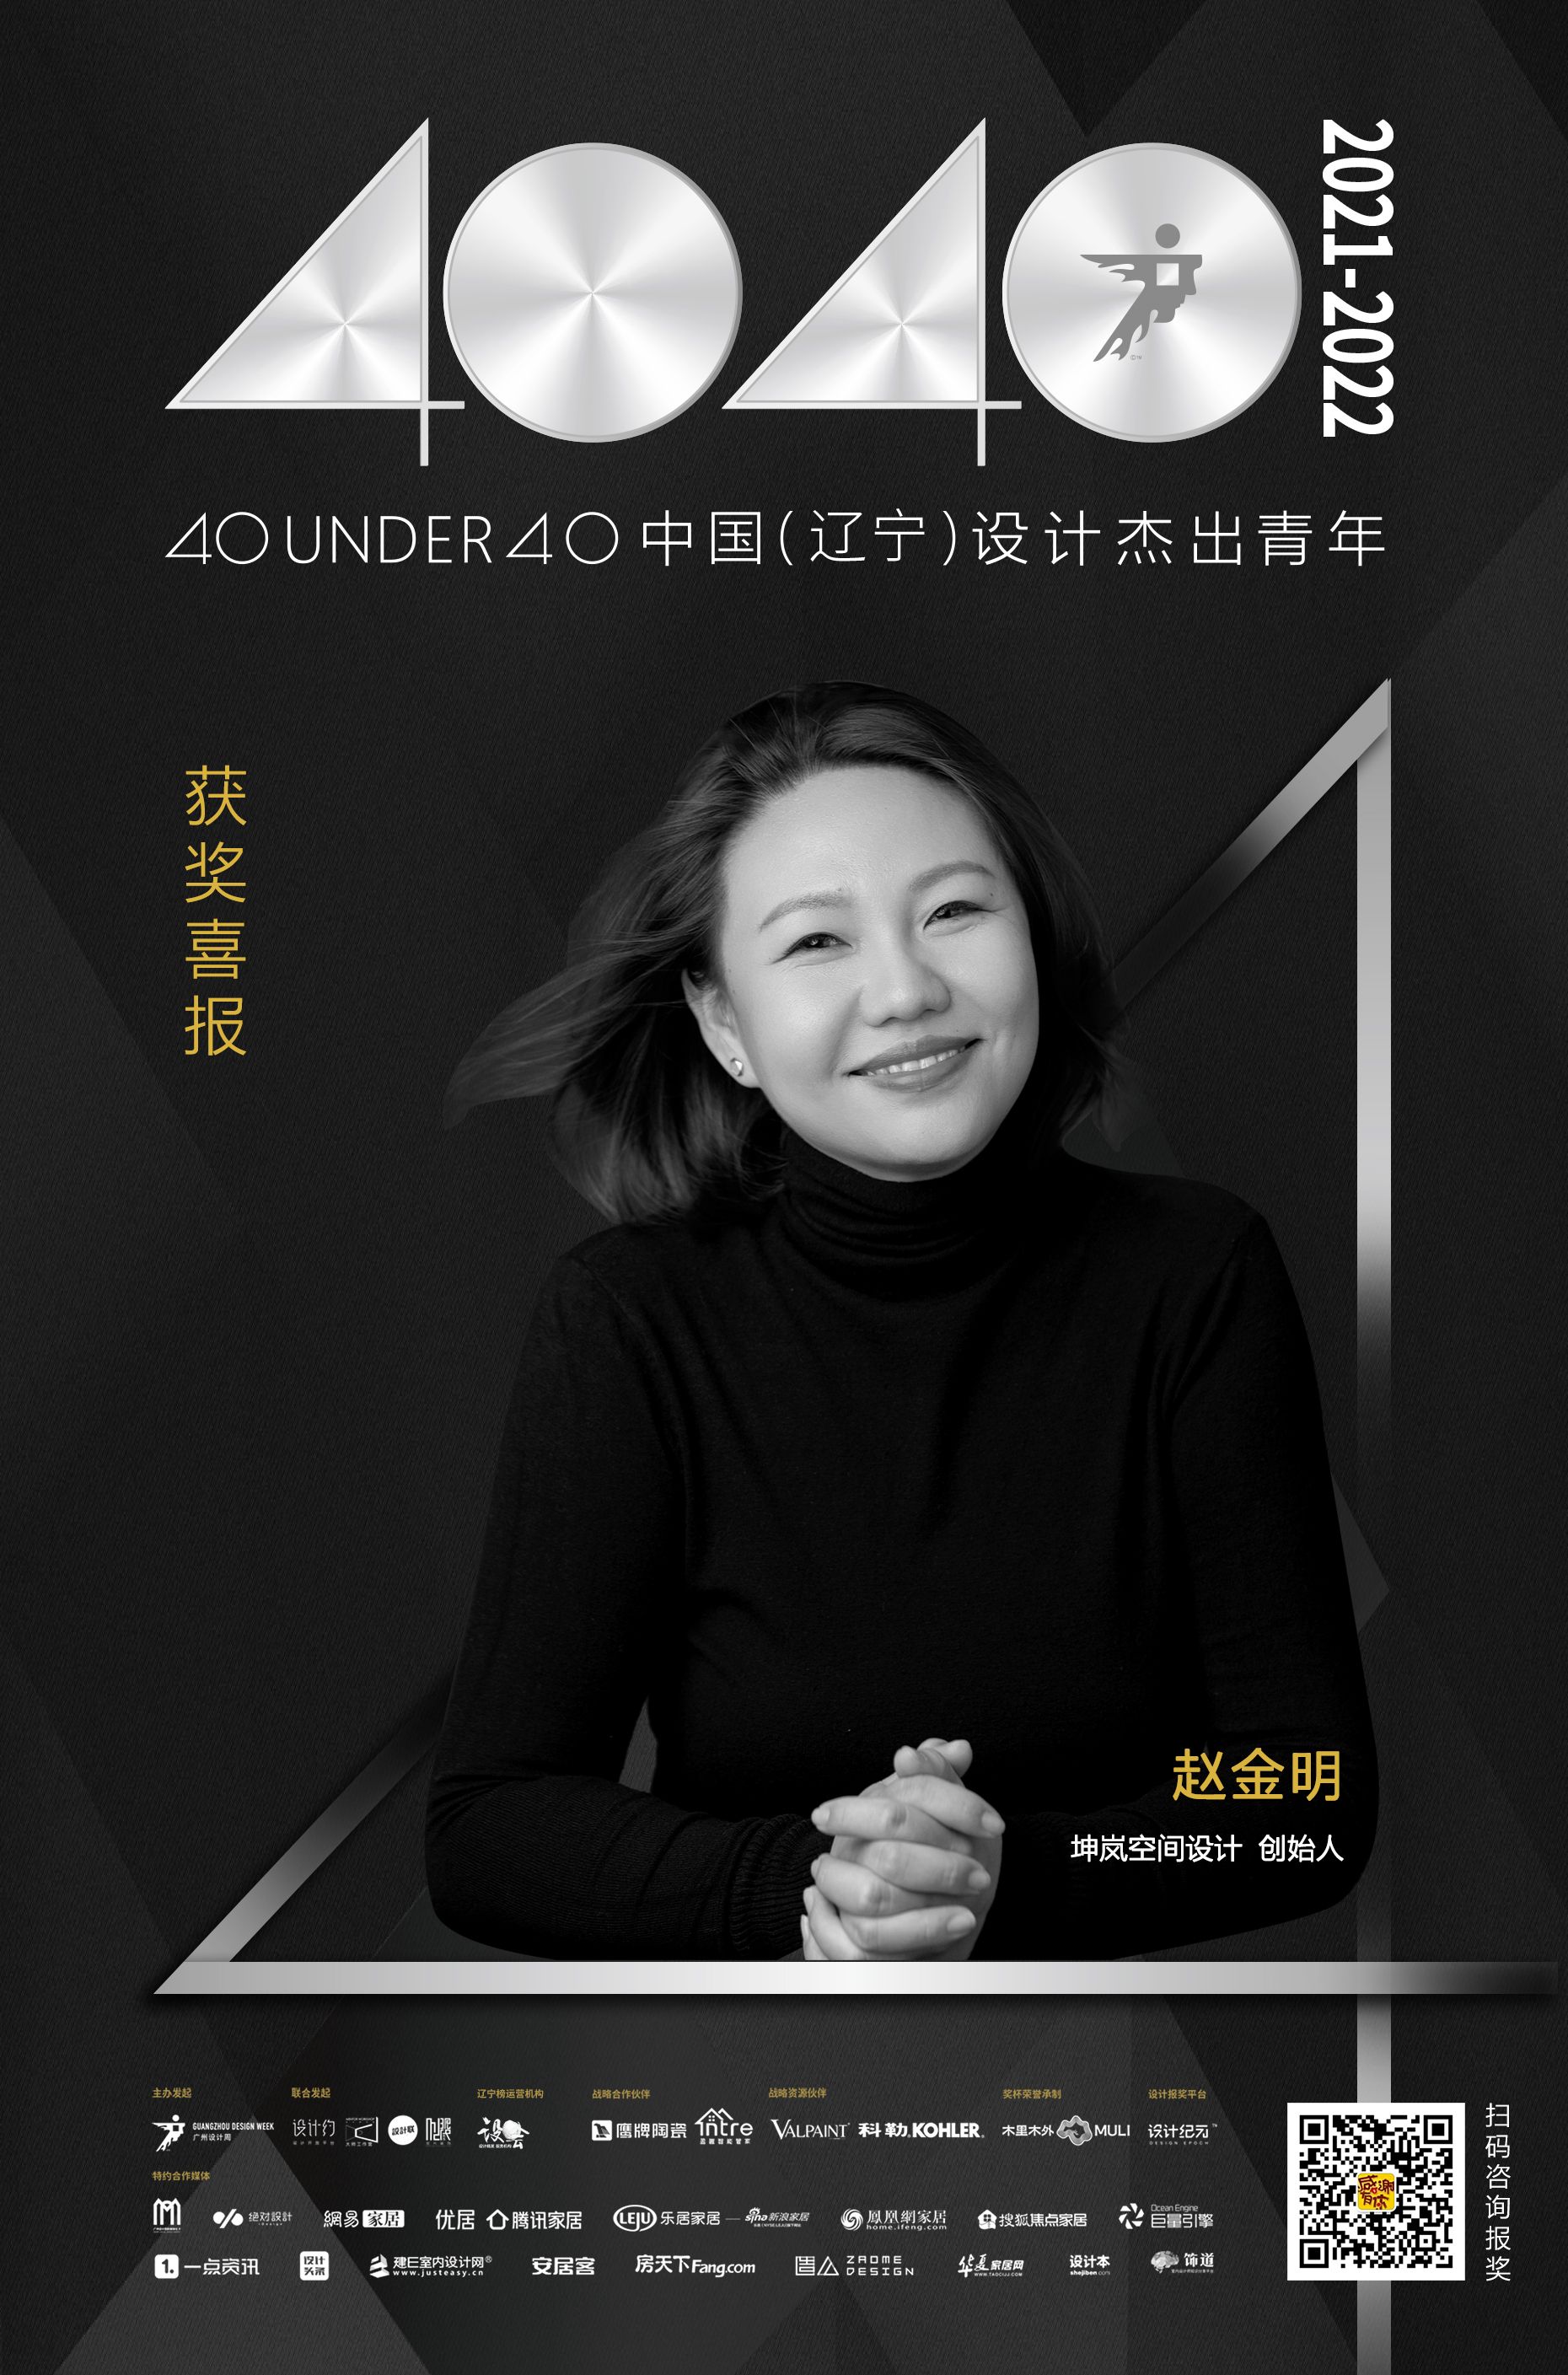 设计师赵金明入选40 UNDER 40辽宁设计杰出青年榜「Talk设计」